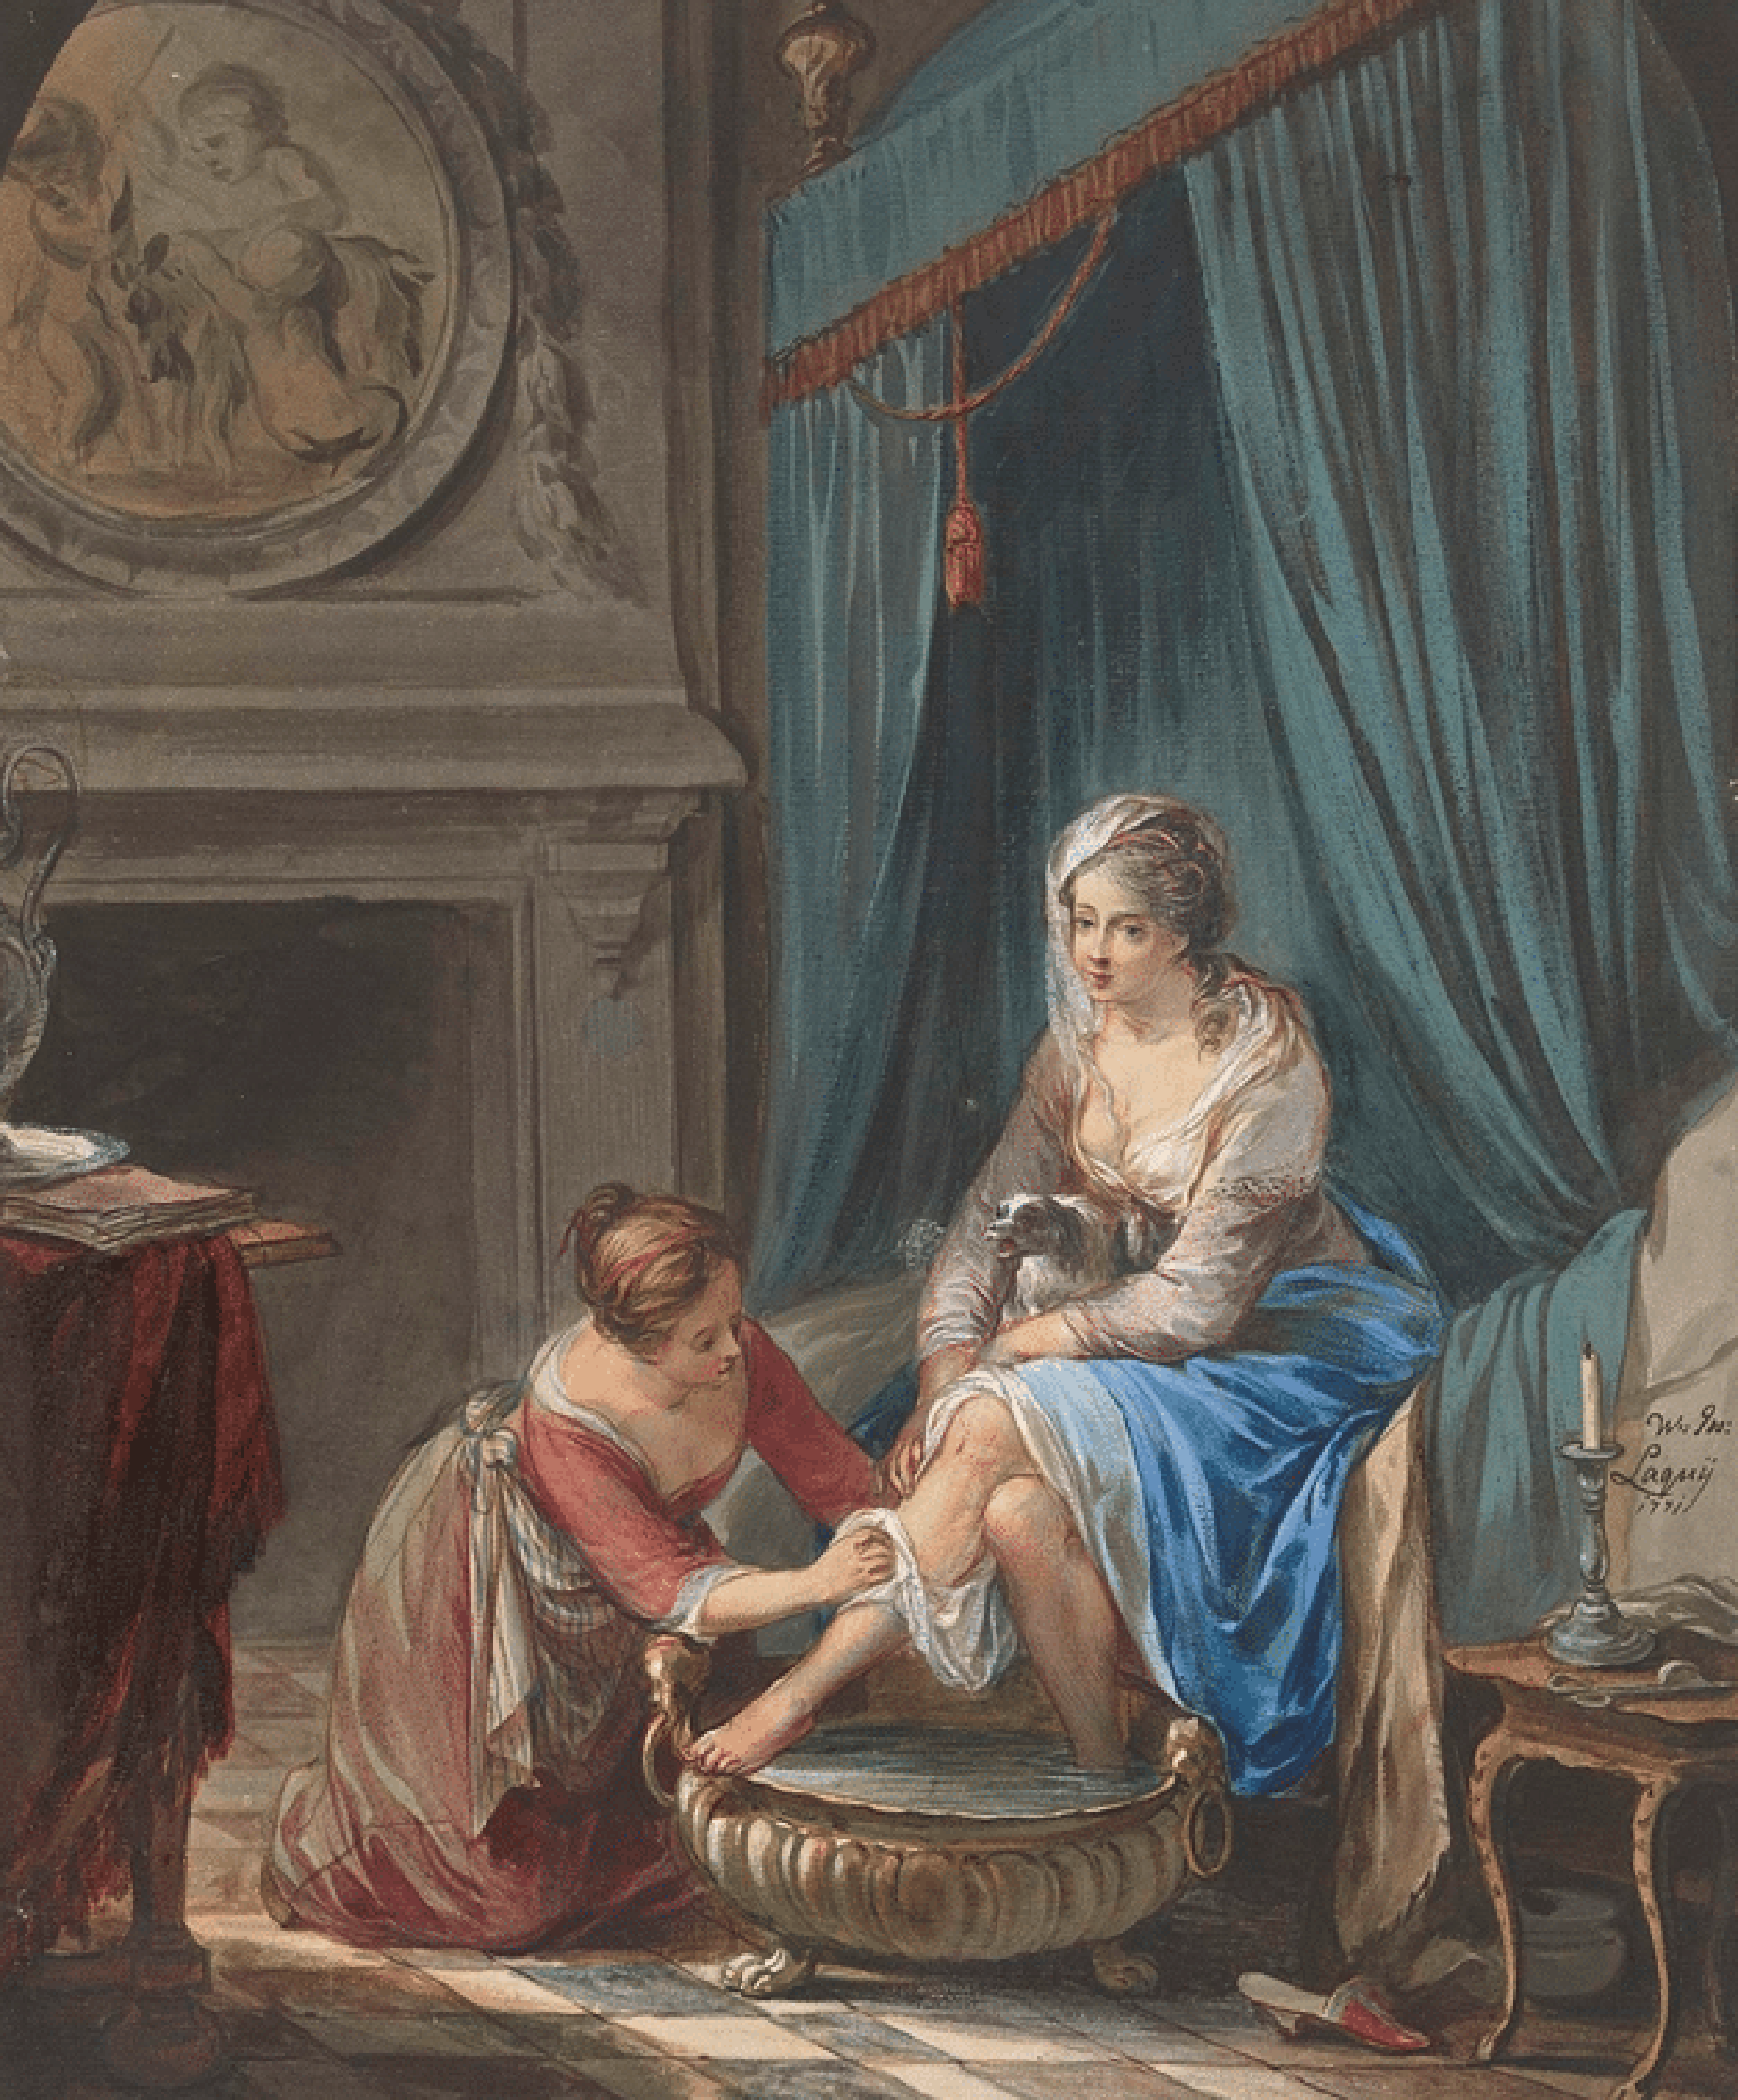 Tranh vẽ về việc vệ sinh bằng chậu nhỏ đựng ít nước ở Pháp, thế kỷ 18. Willem Joseph Laquy, 1771